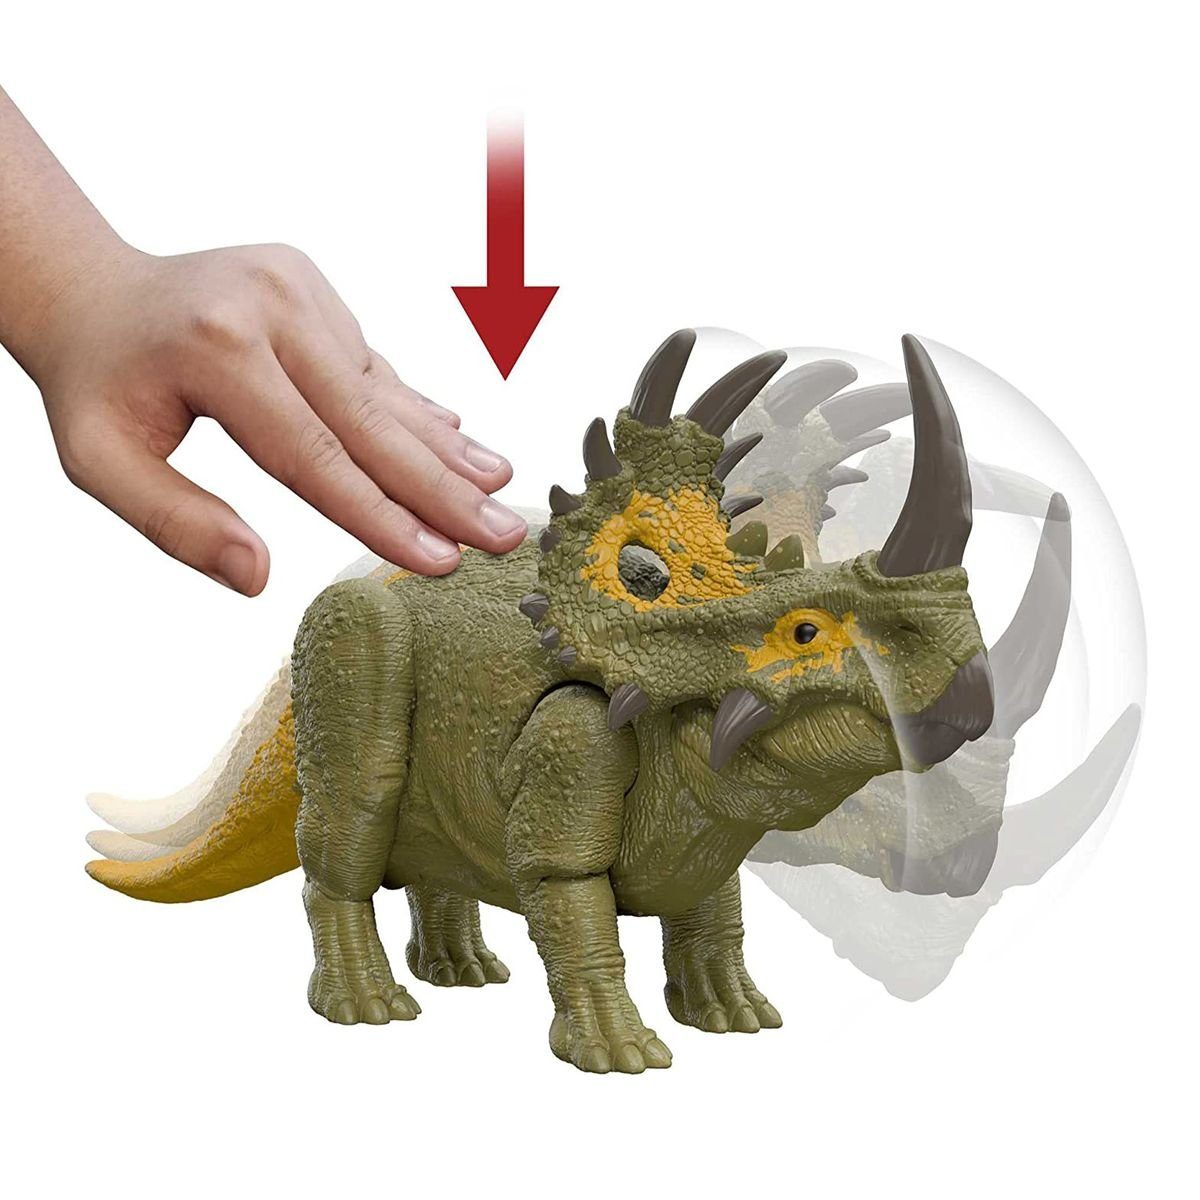 Dominion Spielfigur World Roar - Dinosaurier - Jurassic Sinoceratops, Strikers HDX43 Spielfigur - Mattel Mattel®